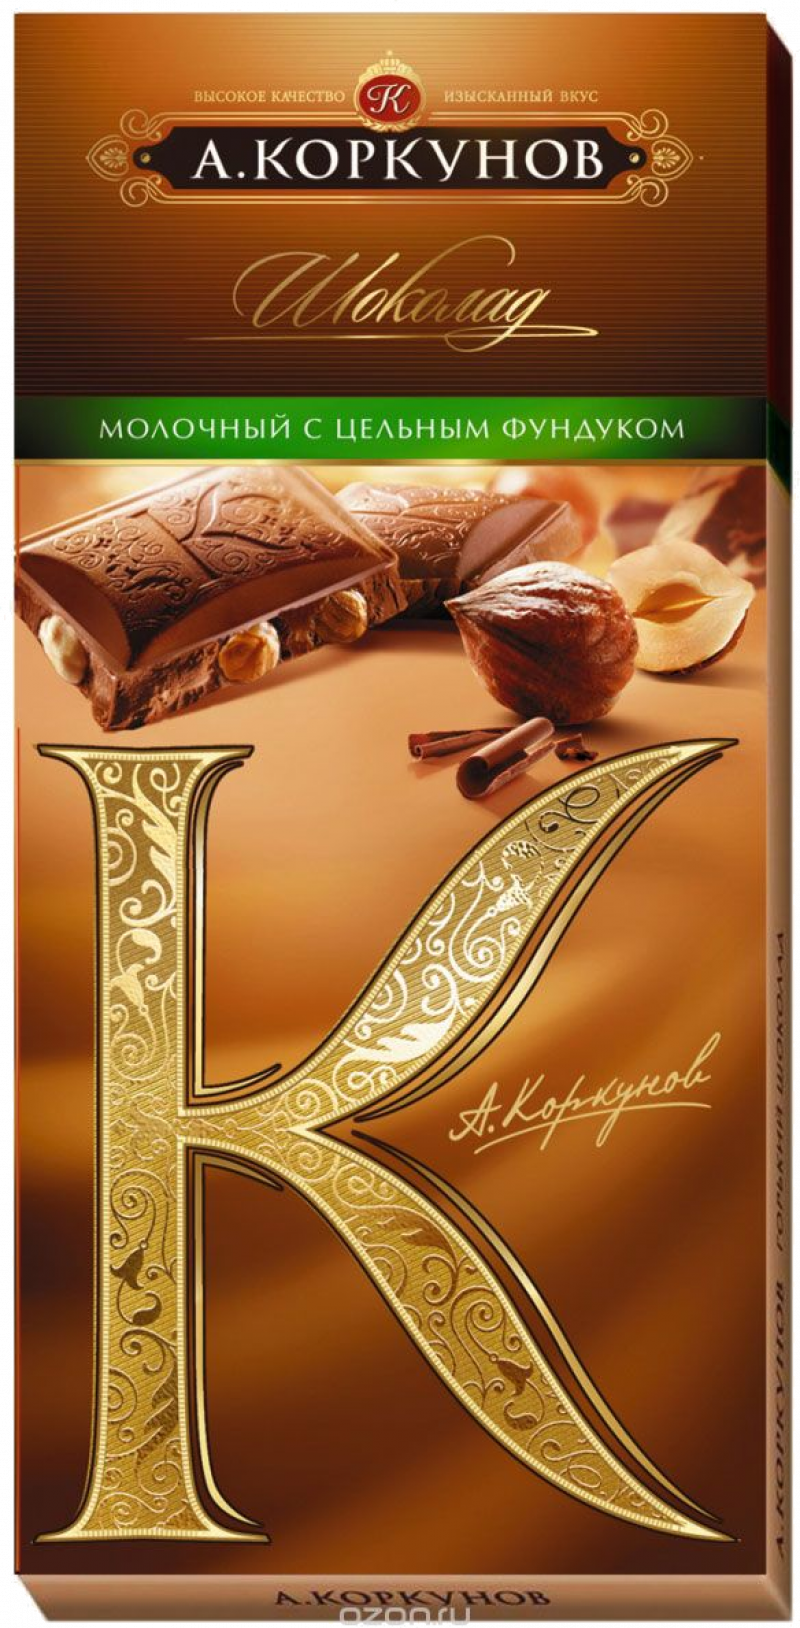 Шоколад ТМ А.Коркунов 90гр. мол.цельн.Фундук